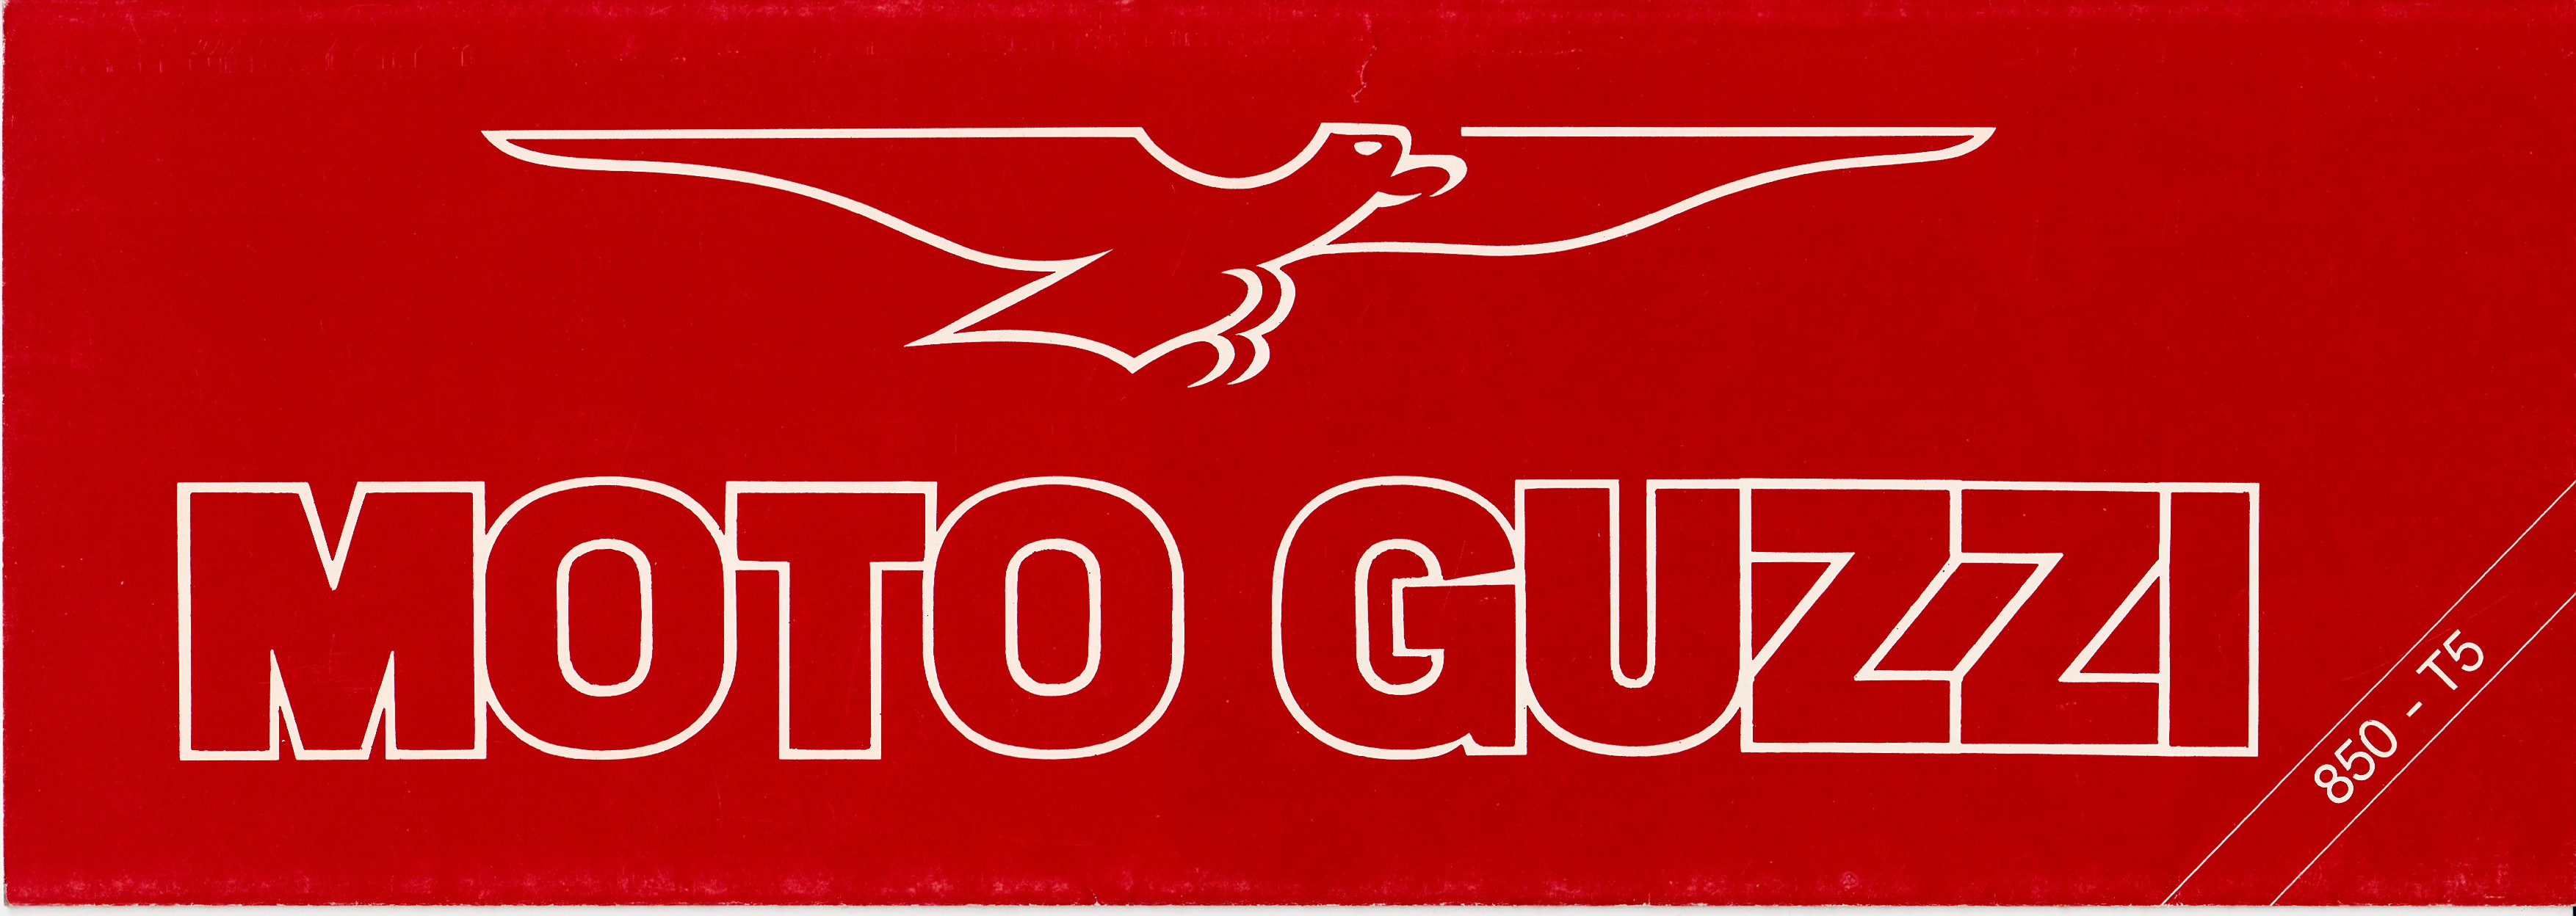 Brochure - Moto Guzzi 850 T5 (folded style brochure)